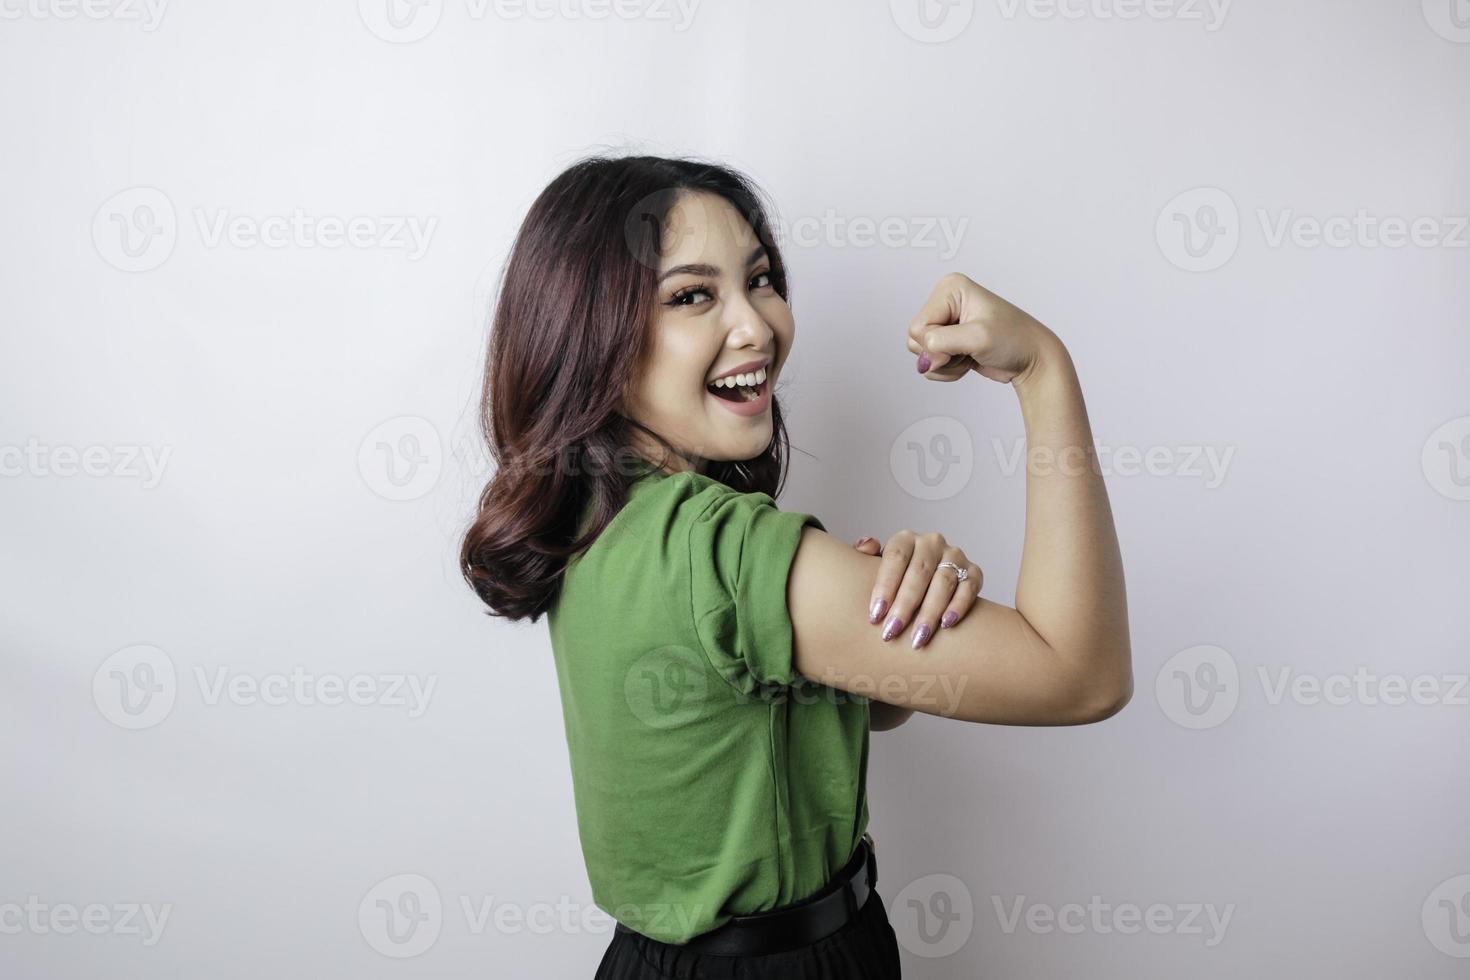 upphetsad asiatisk kvinna bär en grön t-shirt som visar stark gest förbi lyft henne vapen och muskler leende stolt foto